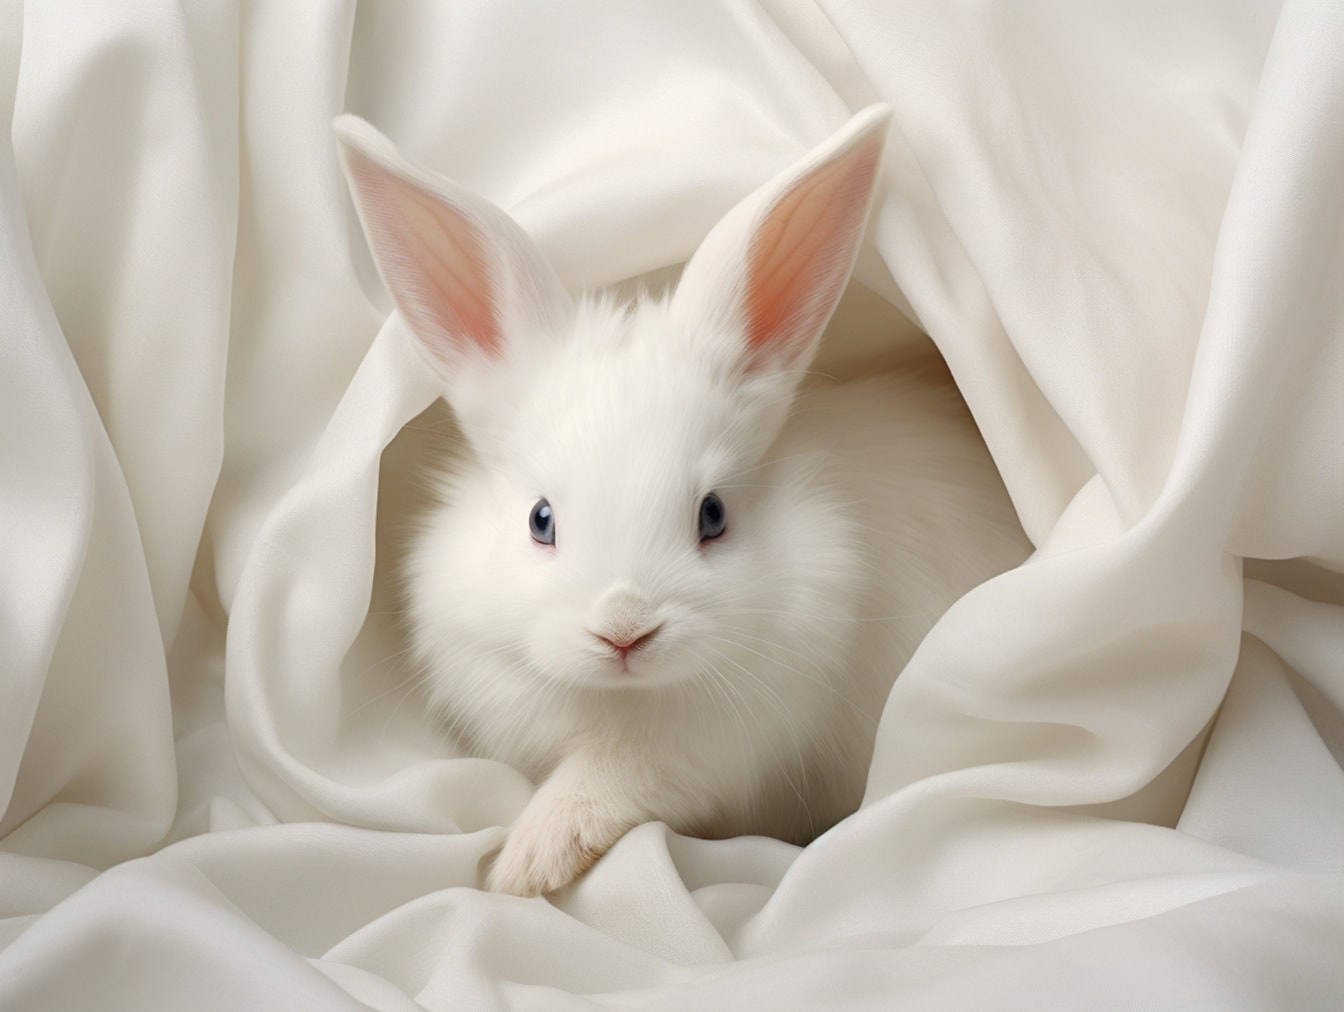 Leuk raszuiver wit konijntje in de illustratie van het zijdecanvas